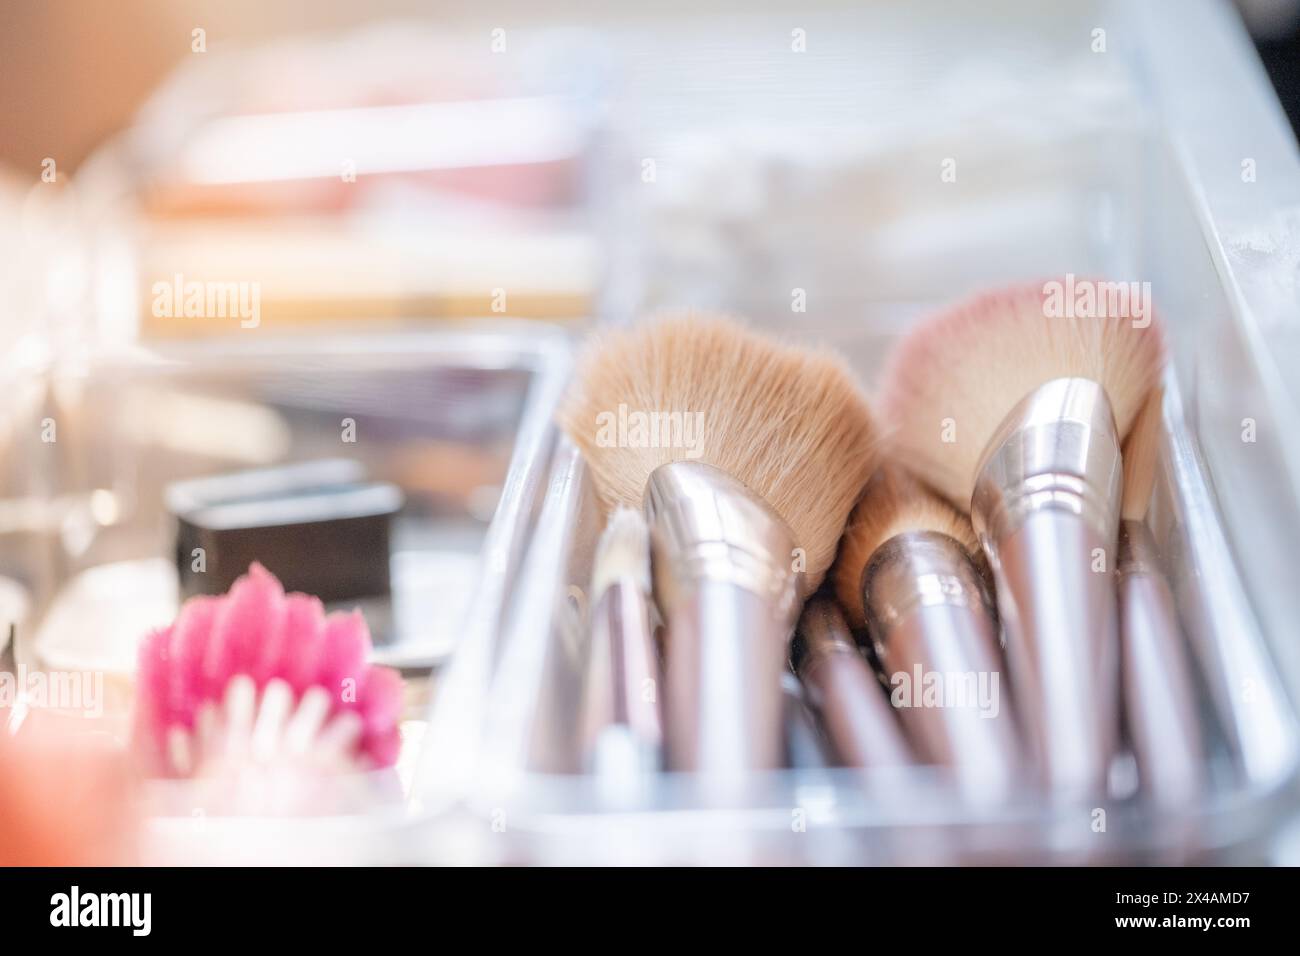 Detail eines Make-up-Sets. Weiche Make-up-Pinsel Stockfoto